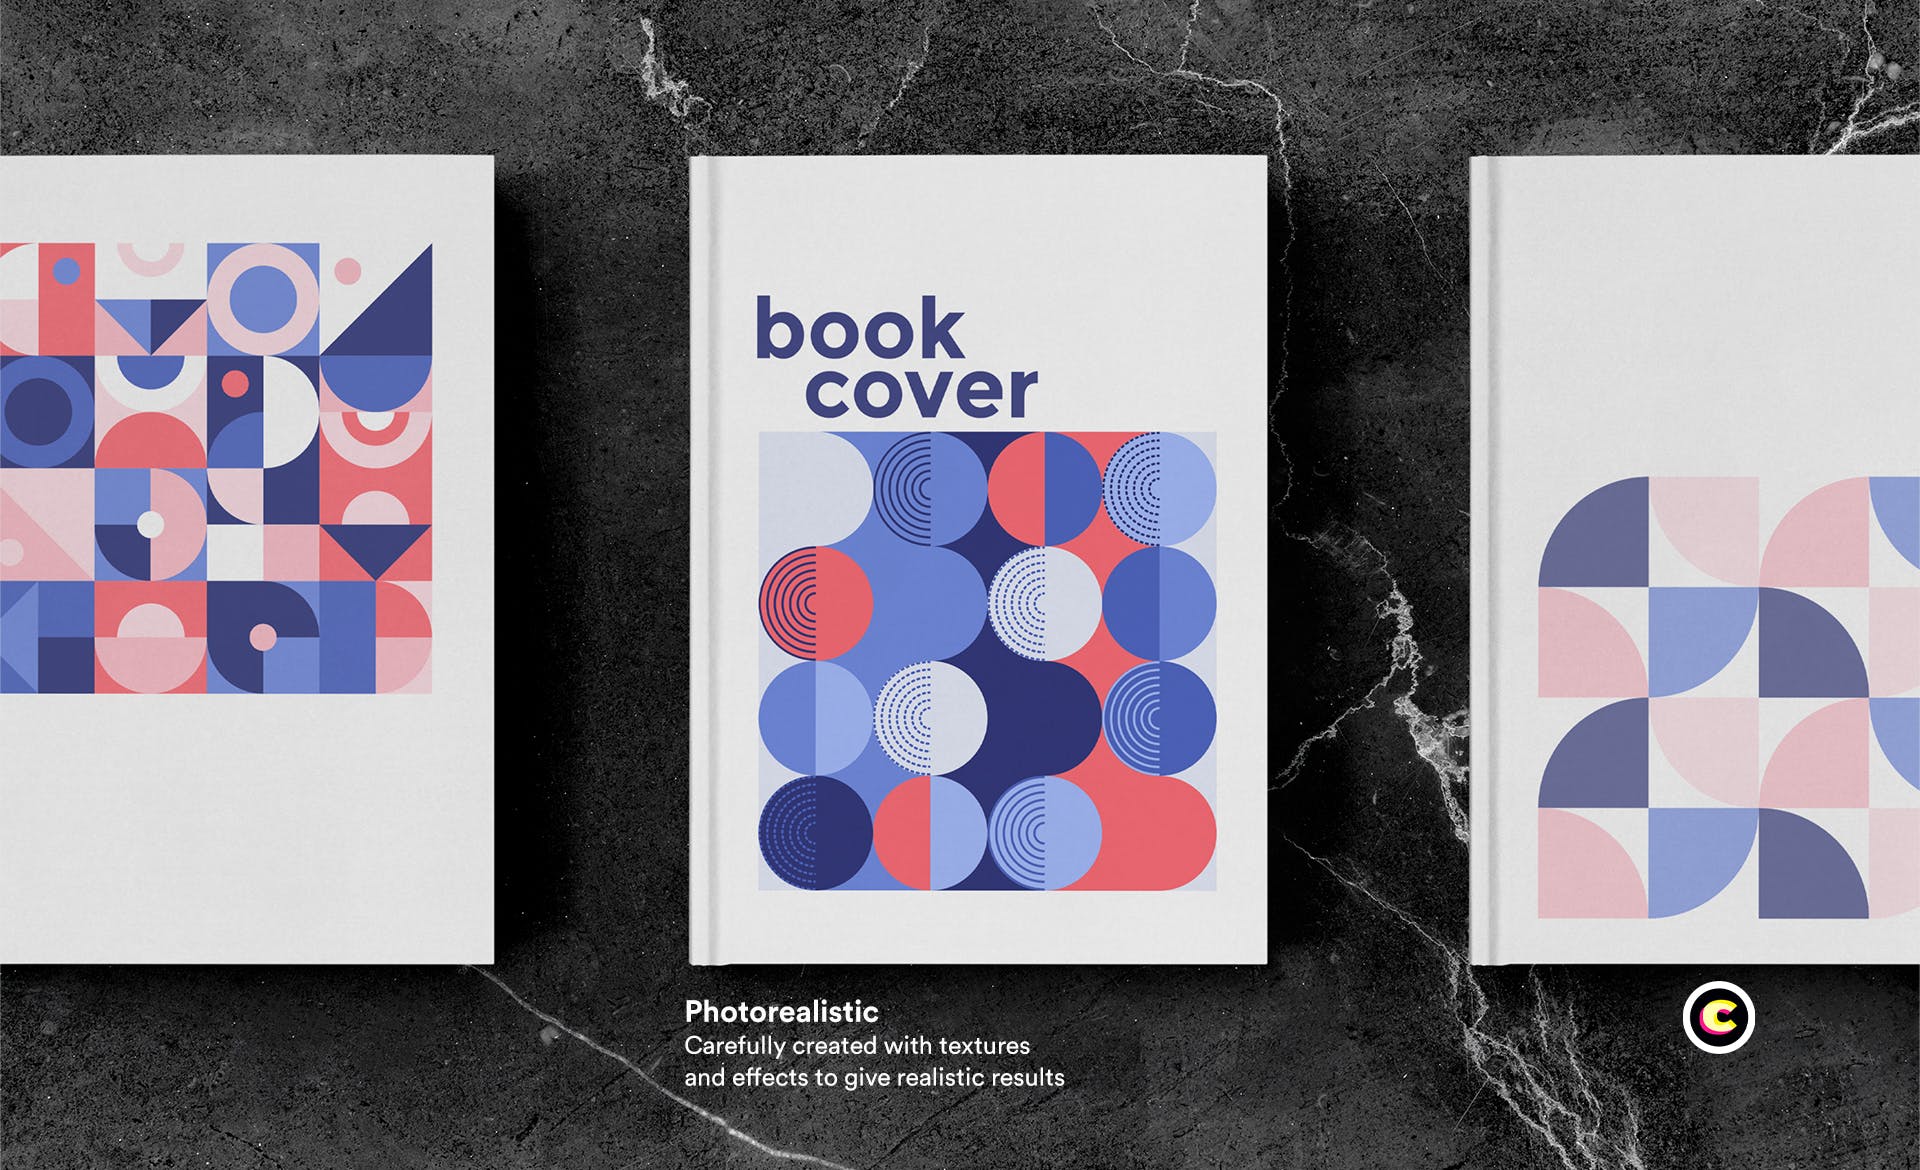 高端图书封面艺术设计图样机第一素材精选模板 Book Cover Mockup set插图(3)